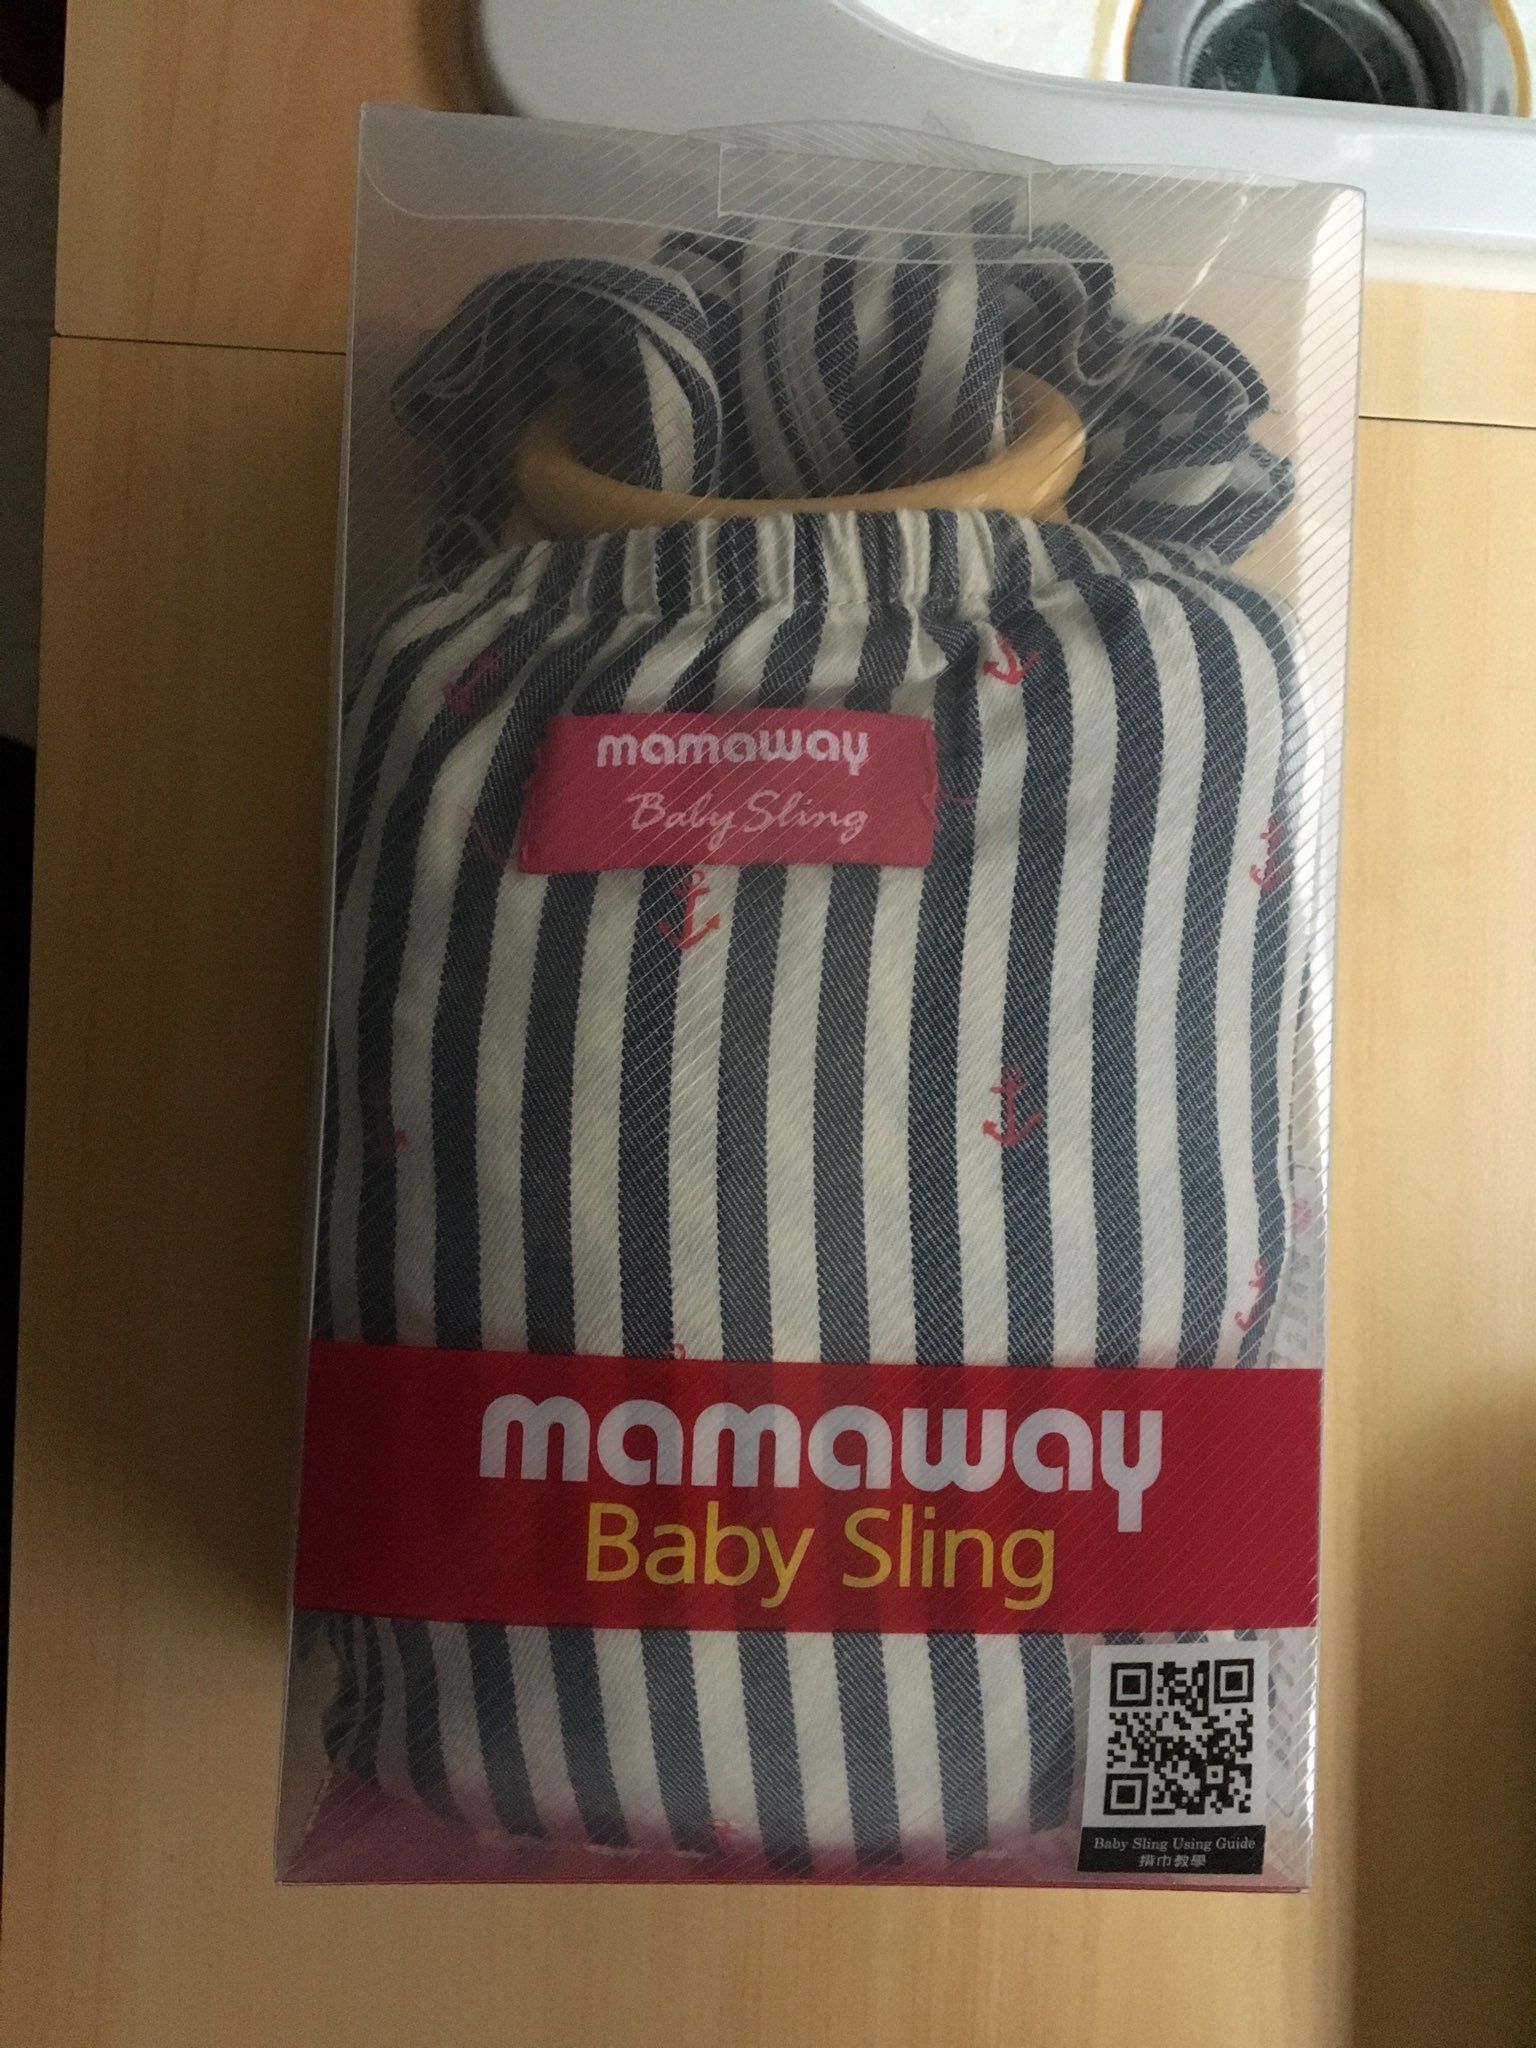 [售]mamaway揹巾-059954 小紅鉚育兒揹巾